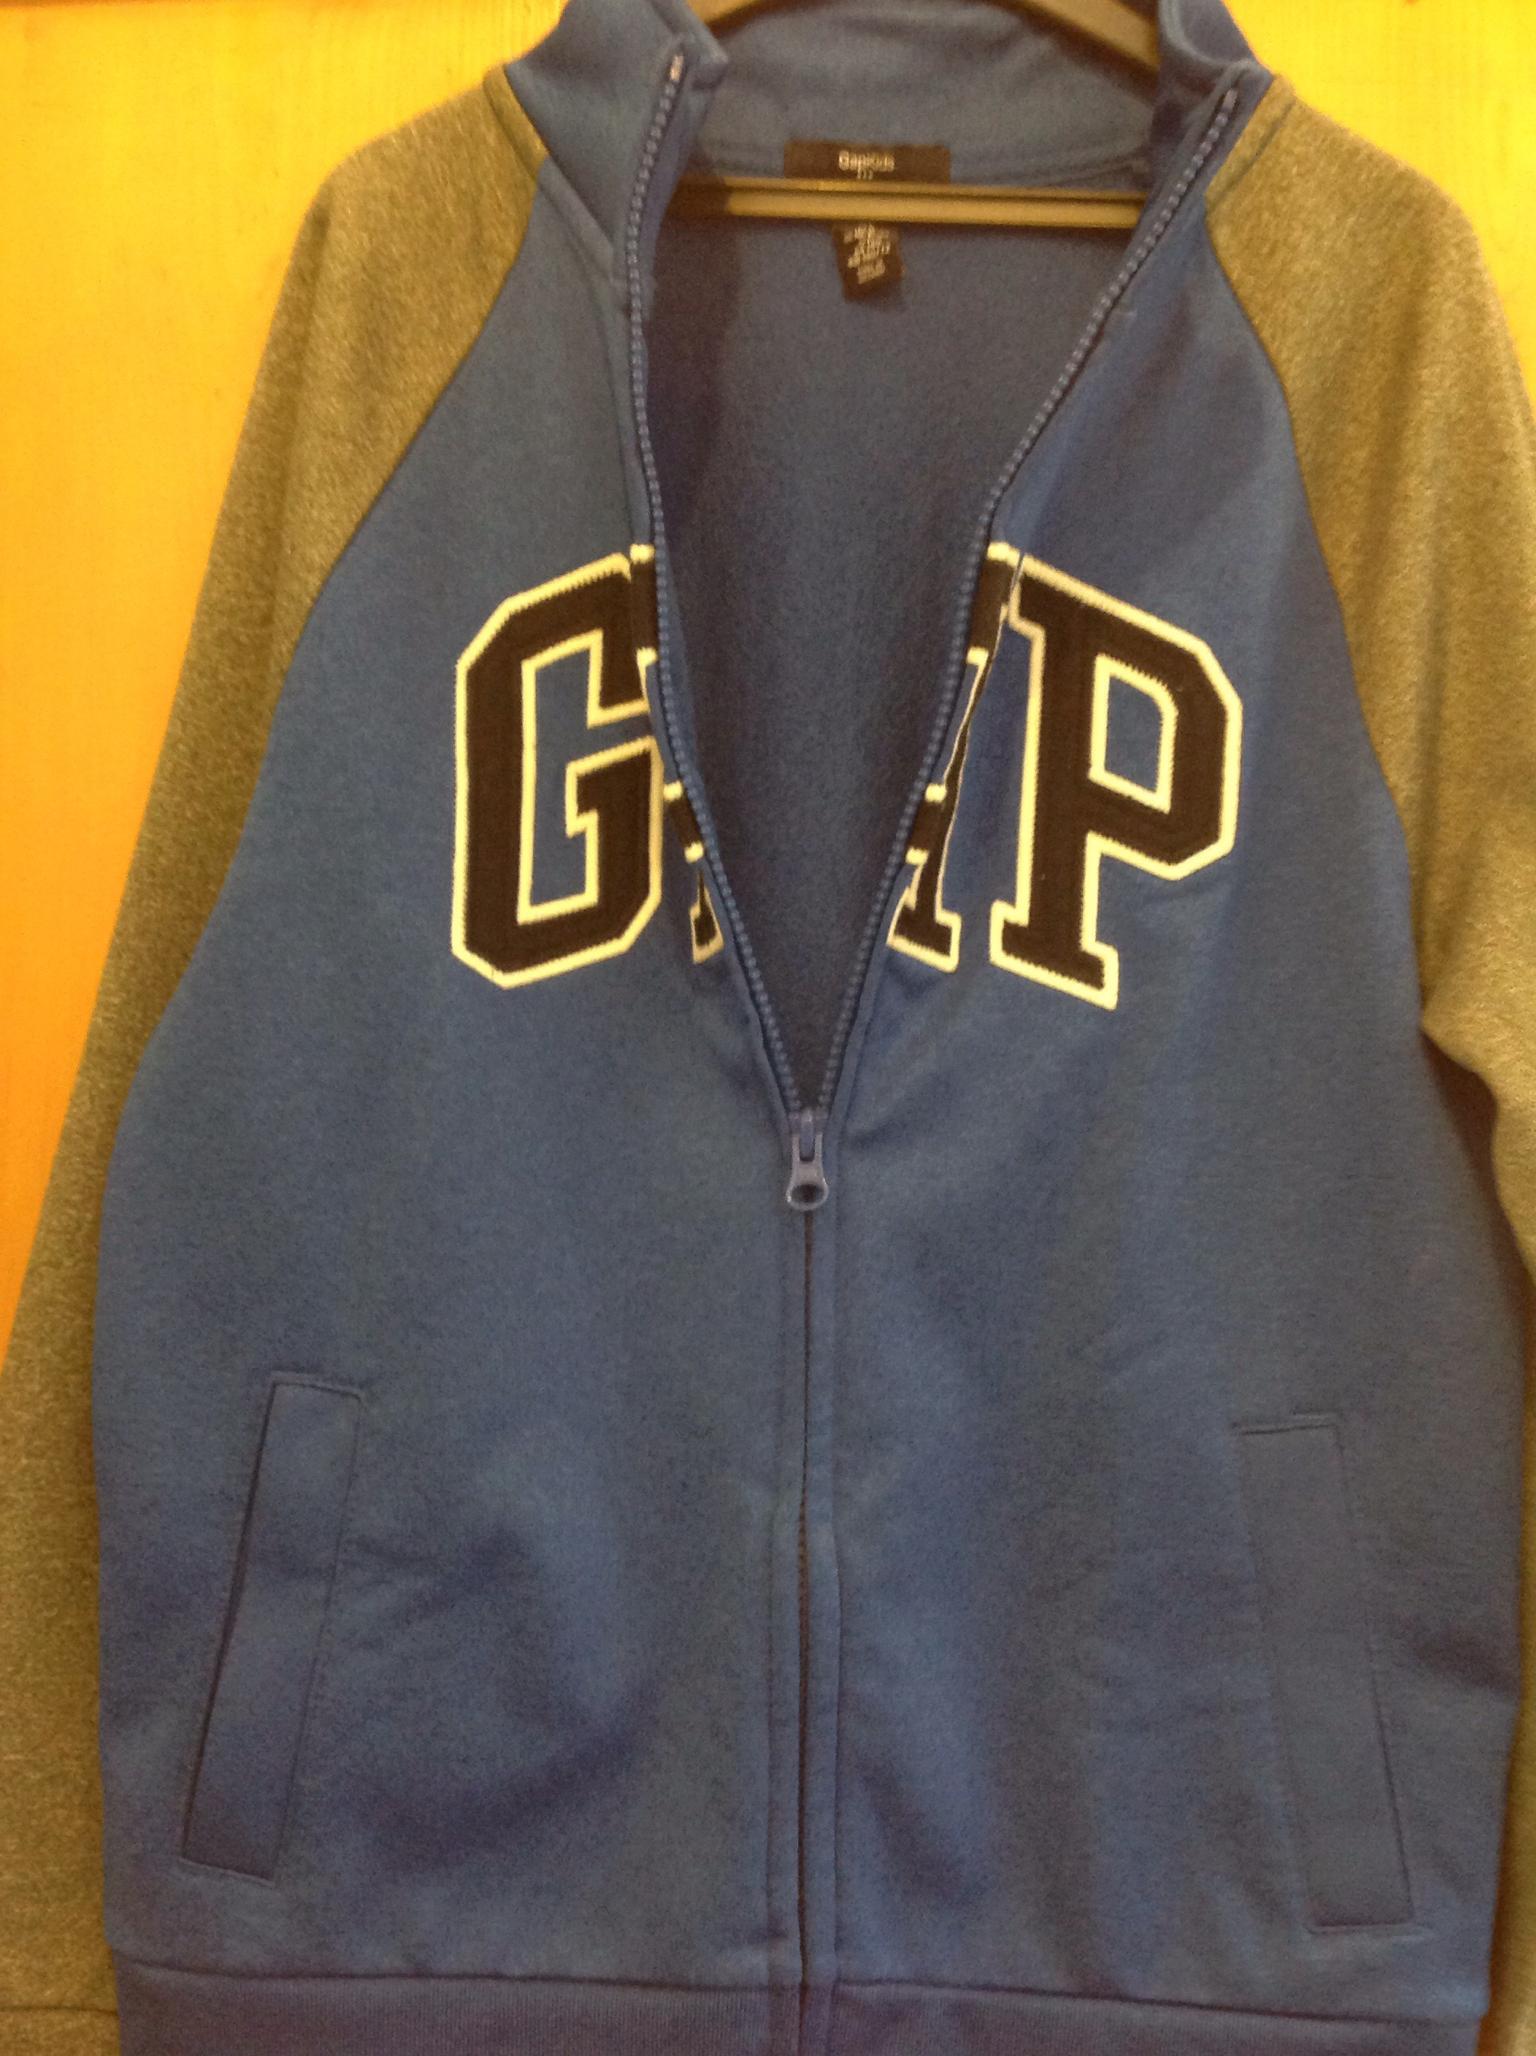 gap blue jacket